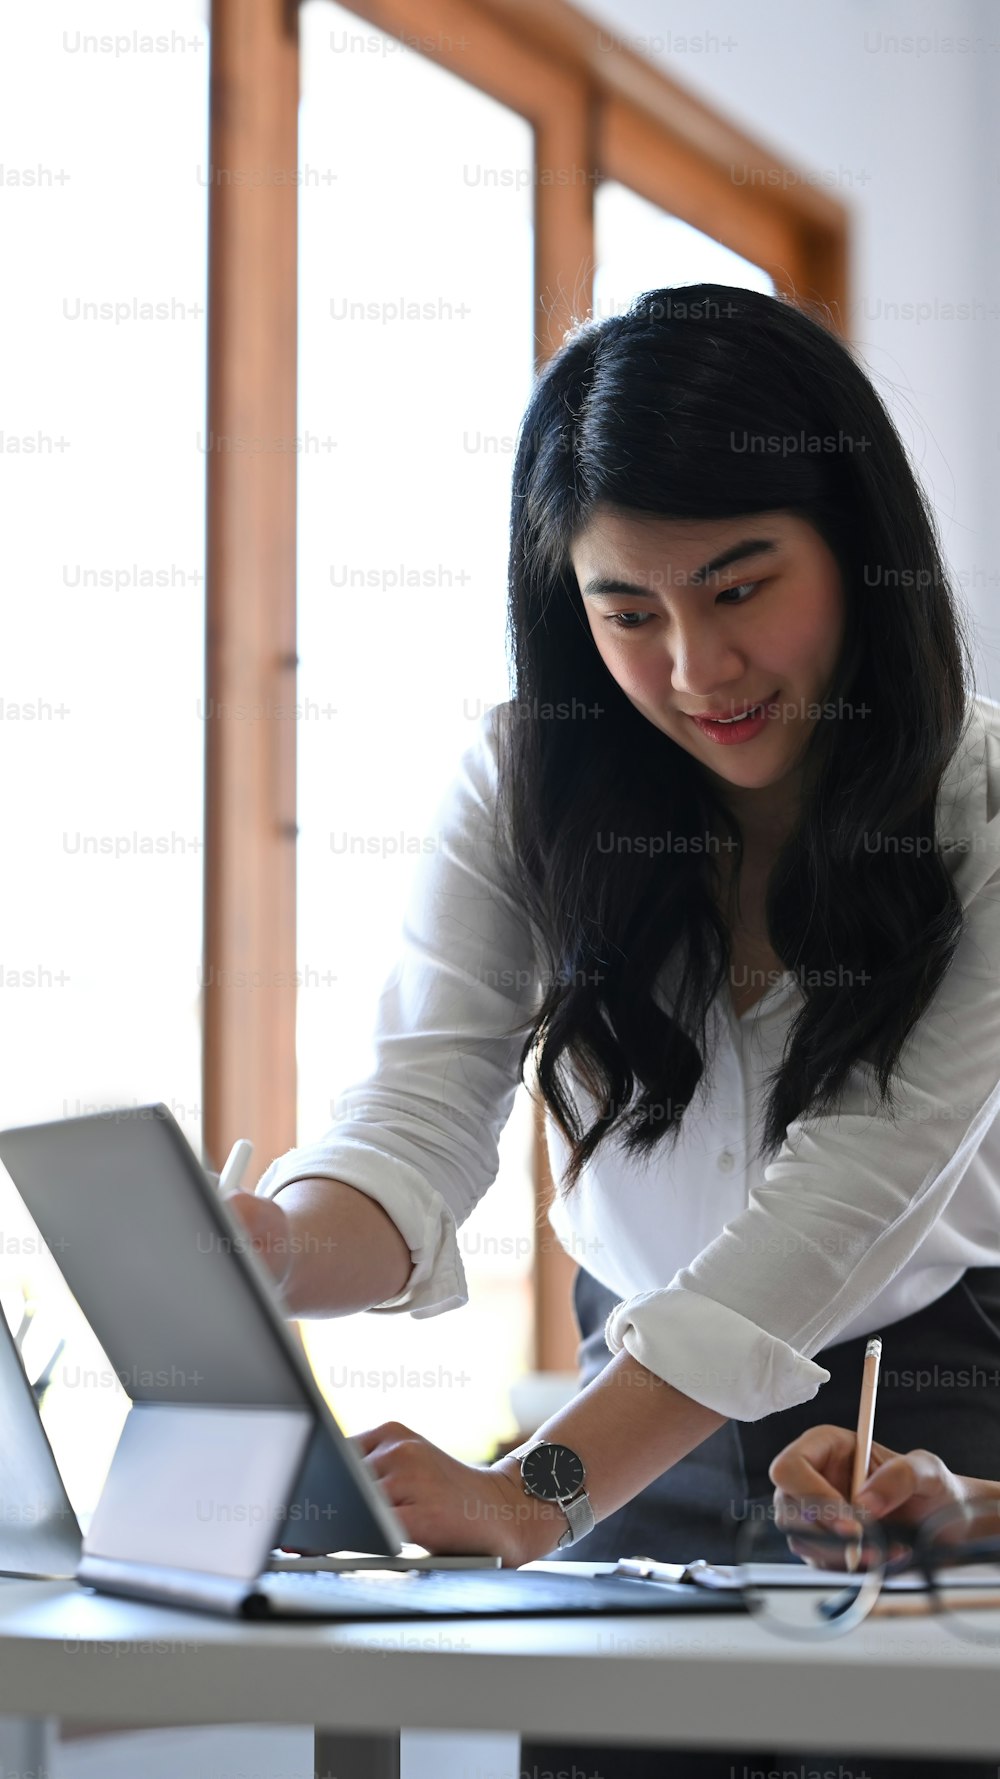 Empresária asiática compartilhando ideias ou plano de negócios de startup em tablet de computador com seu colega.